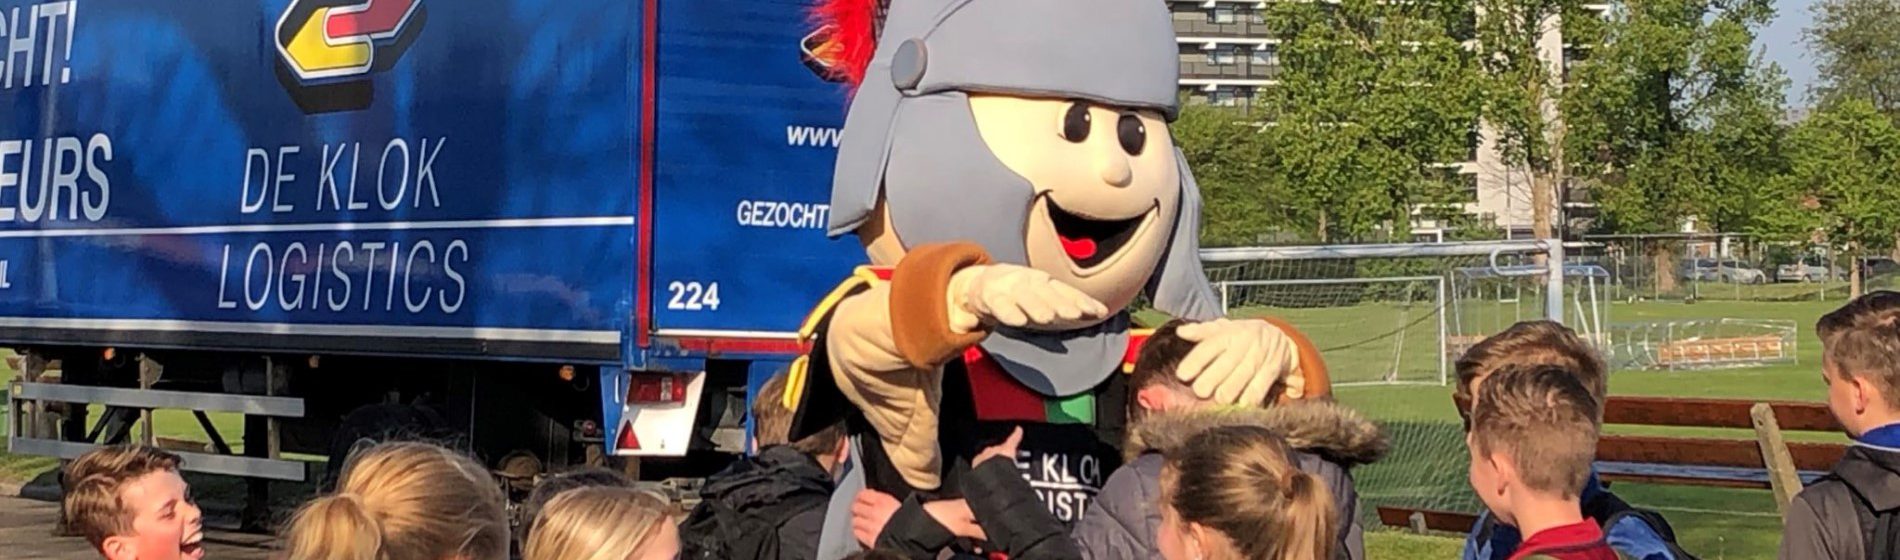 NEC Nijmegen mascot at score a book closing